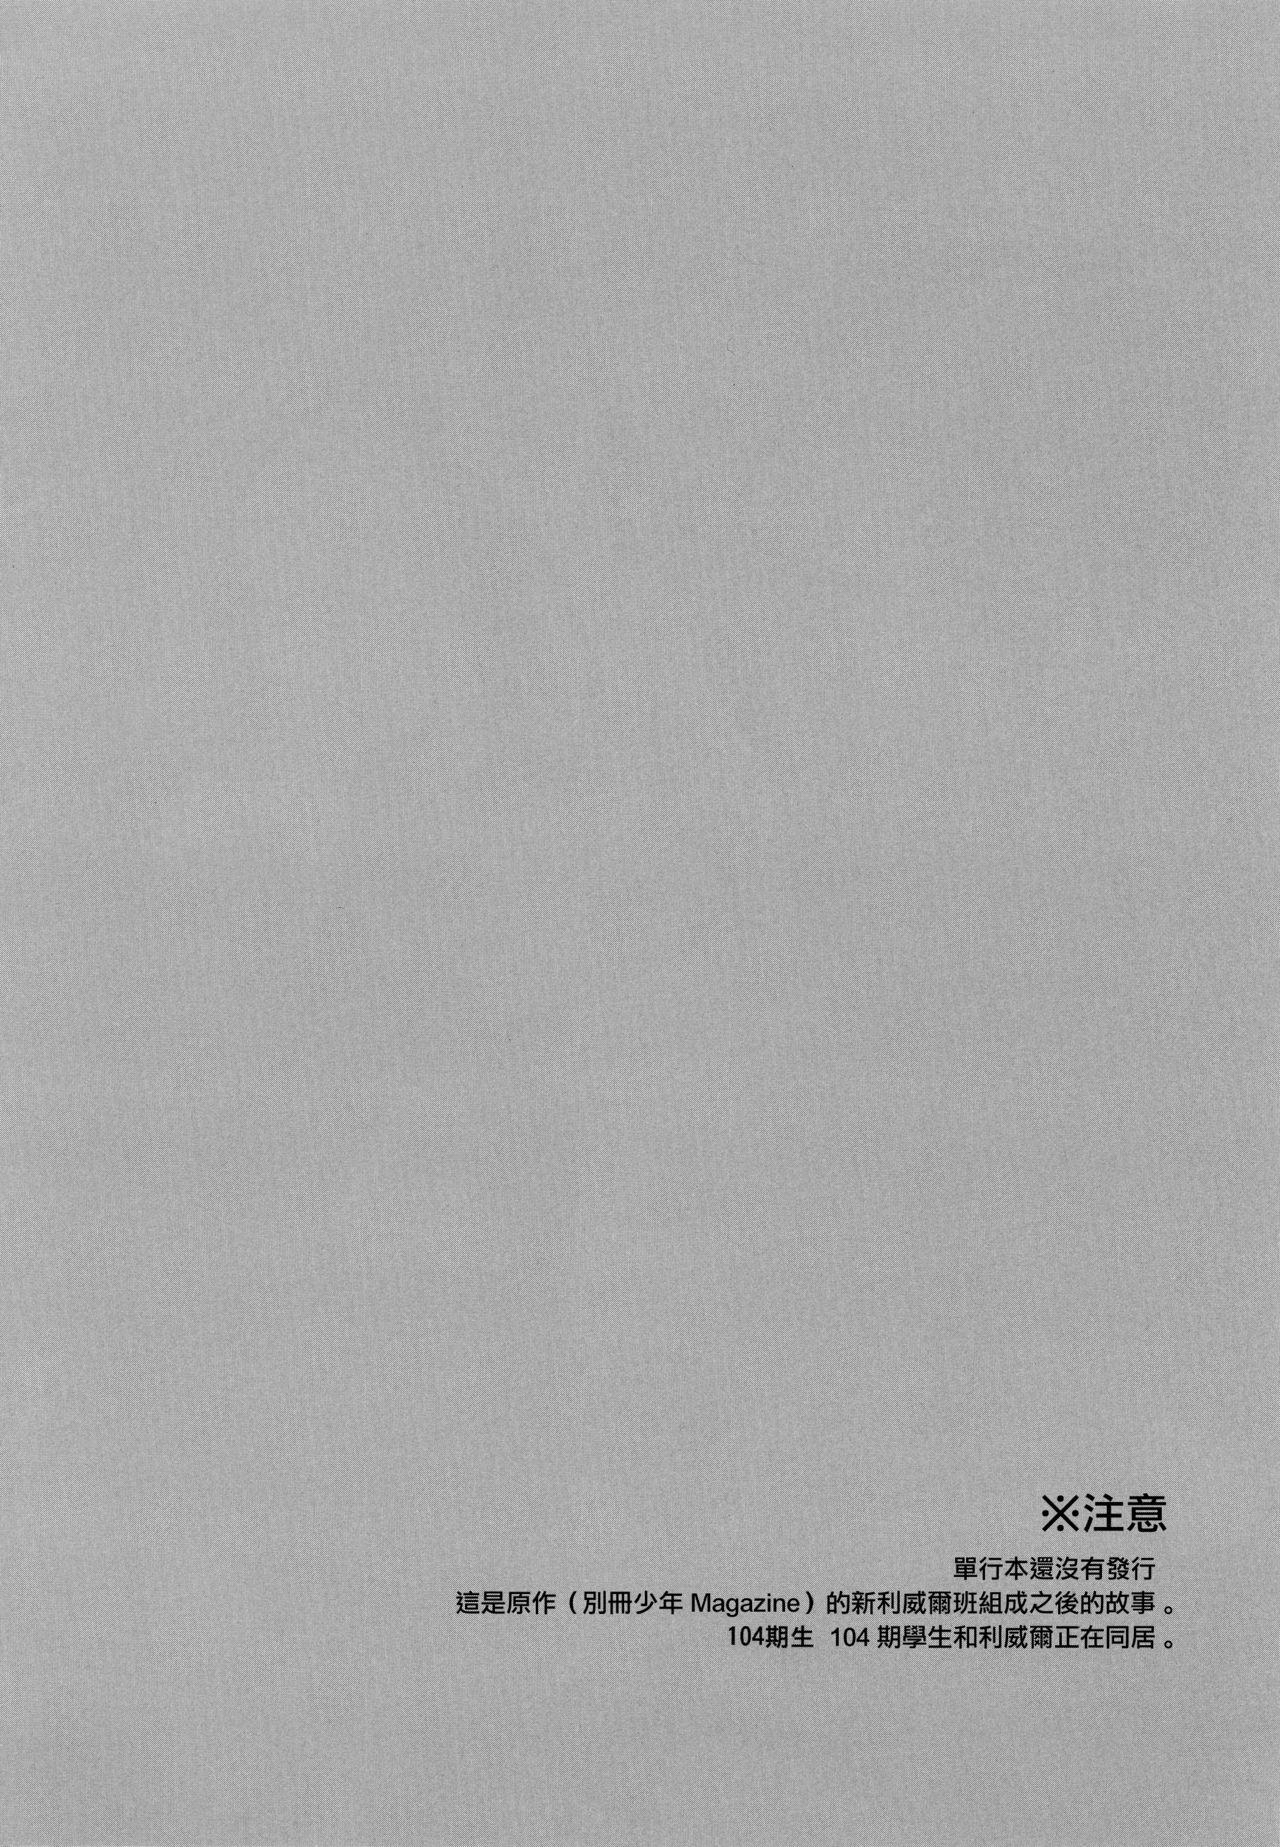 For Shinpei no Dokusen yoku ga tsuyo sugite komaru. - Shingeki no kyojin Amateur - Page 4